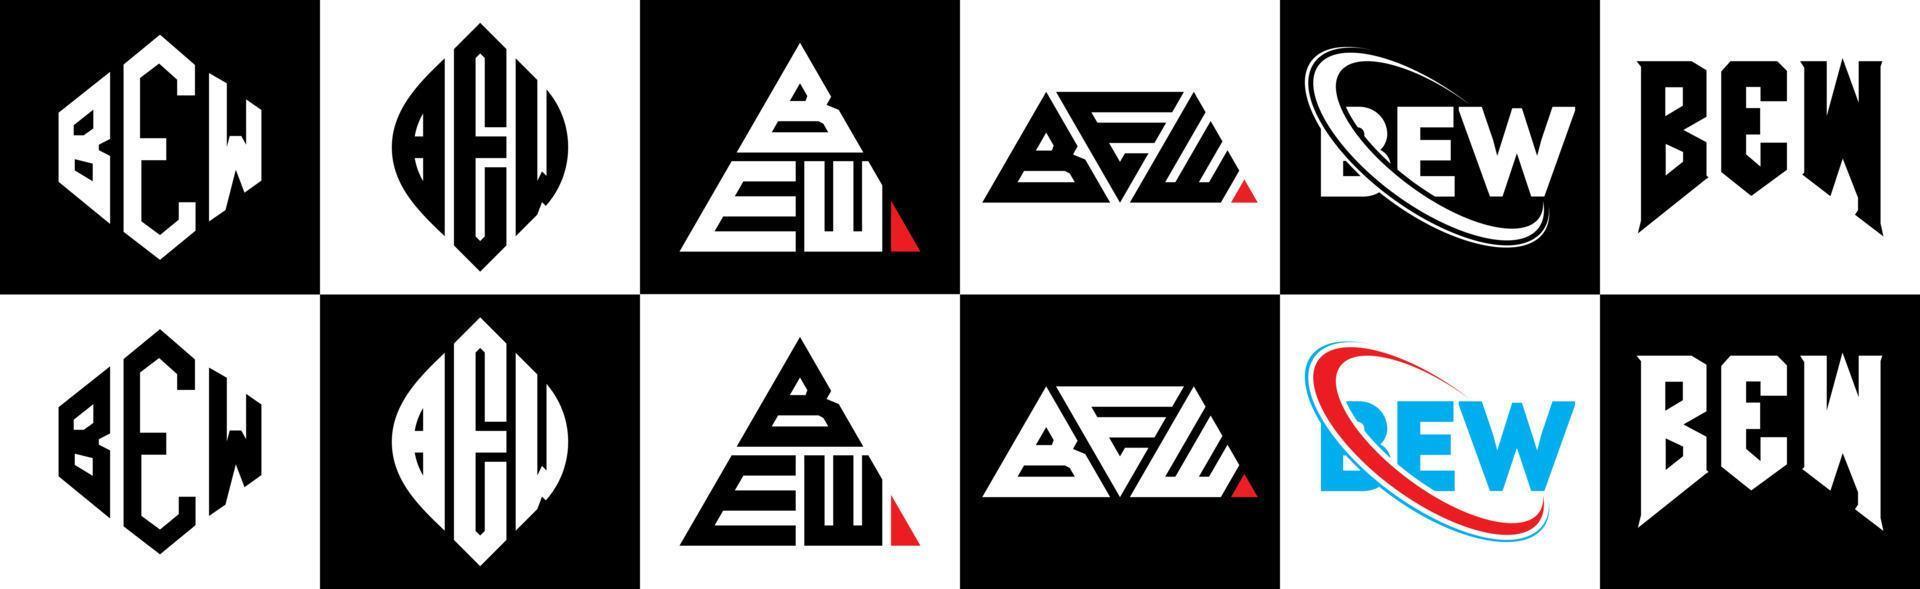 Bew-Buchstaben-Logo-Design in sechs Stilen. Bew Polygon, Kreis, Dreieck, Sechseck, flacher und einfacher Stil mit schwarz-weißem Buchstabenlogo in einer Zeichenfläche. Bew minimalistisches und klassisches Logo vektor